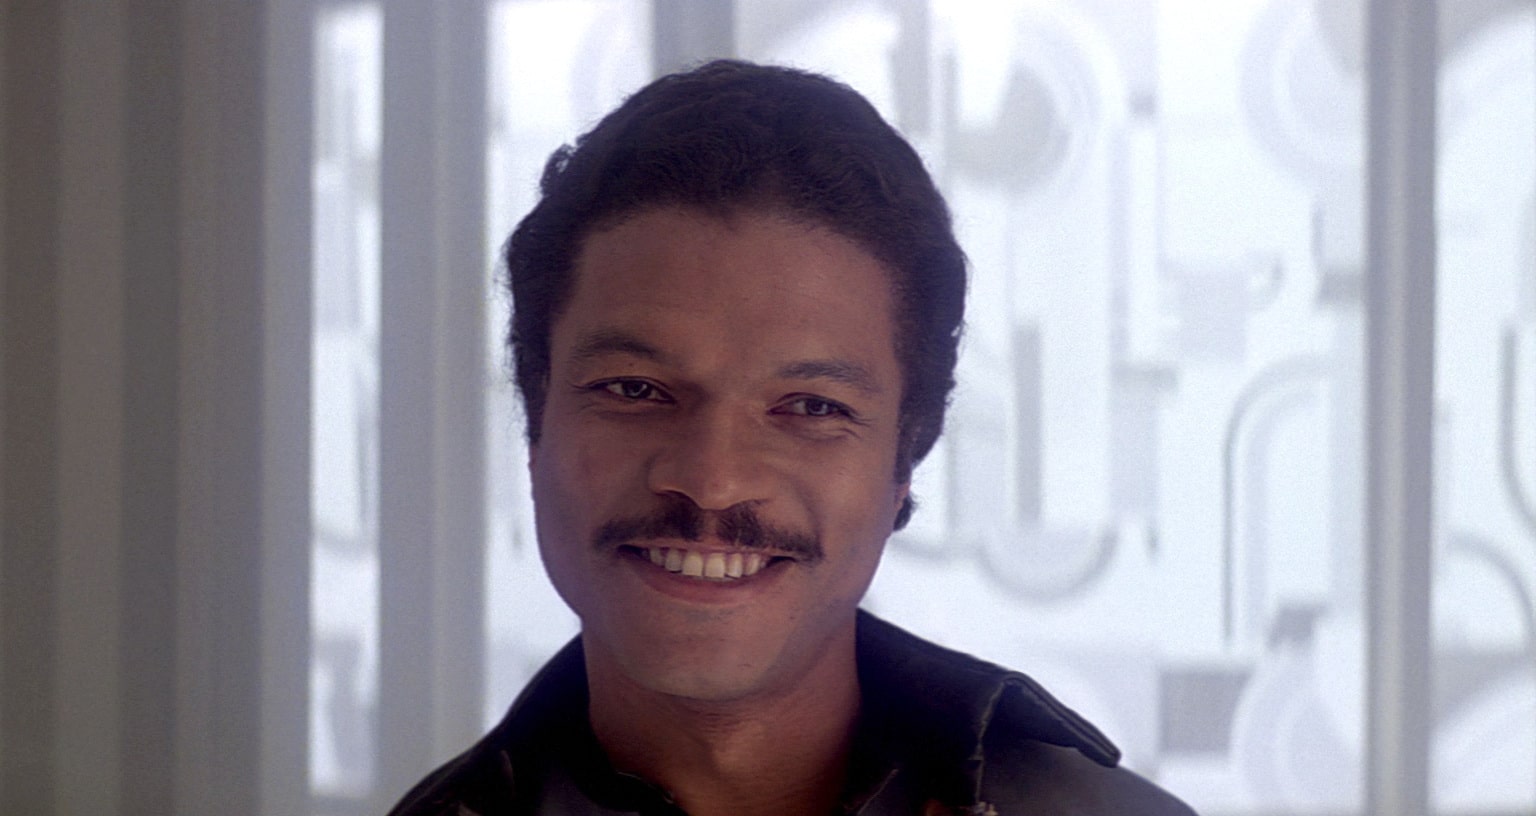 Nothing but Lando Calrissian com esse bigode